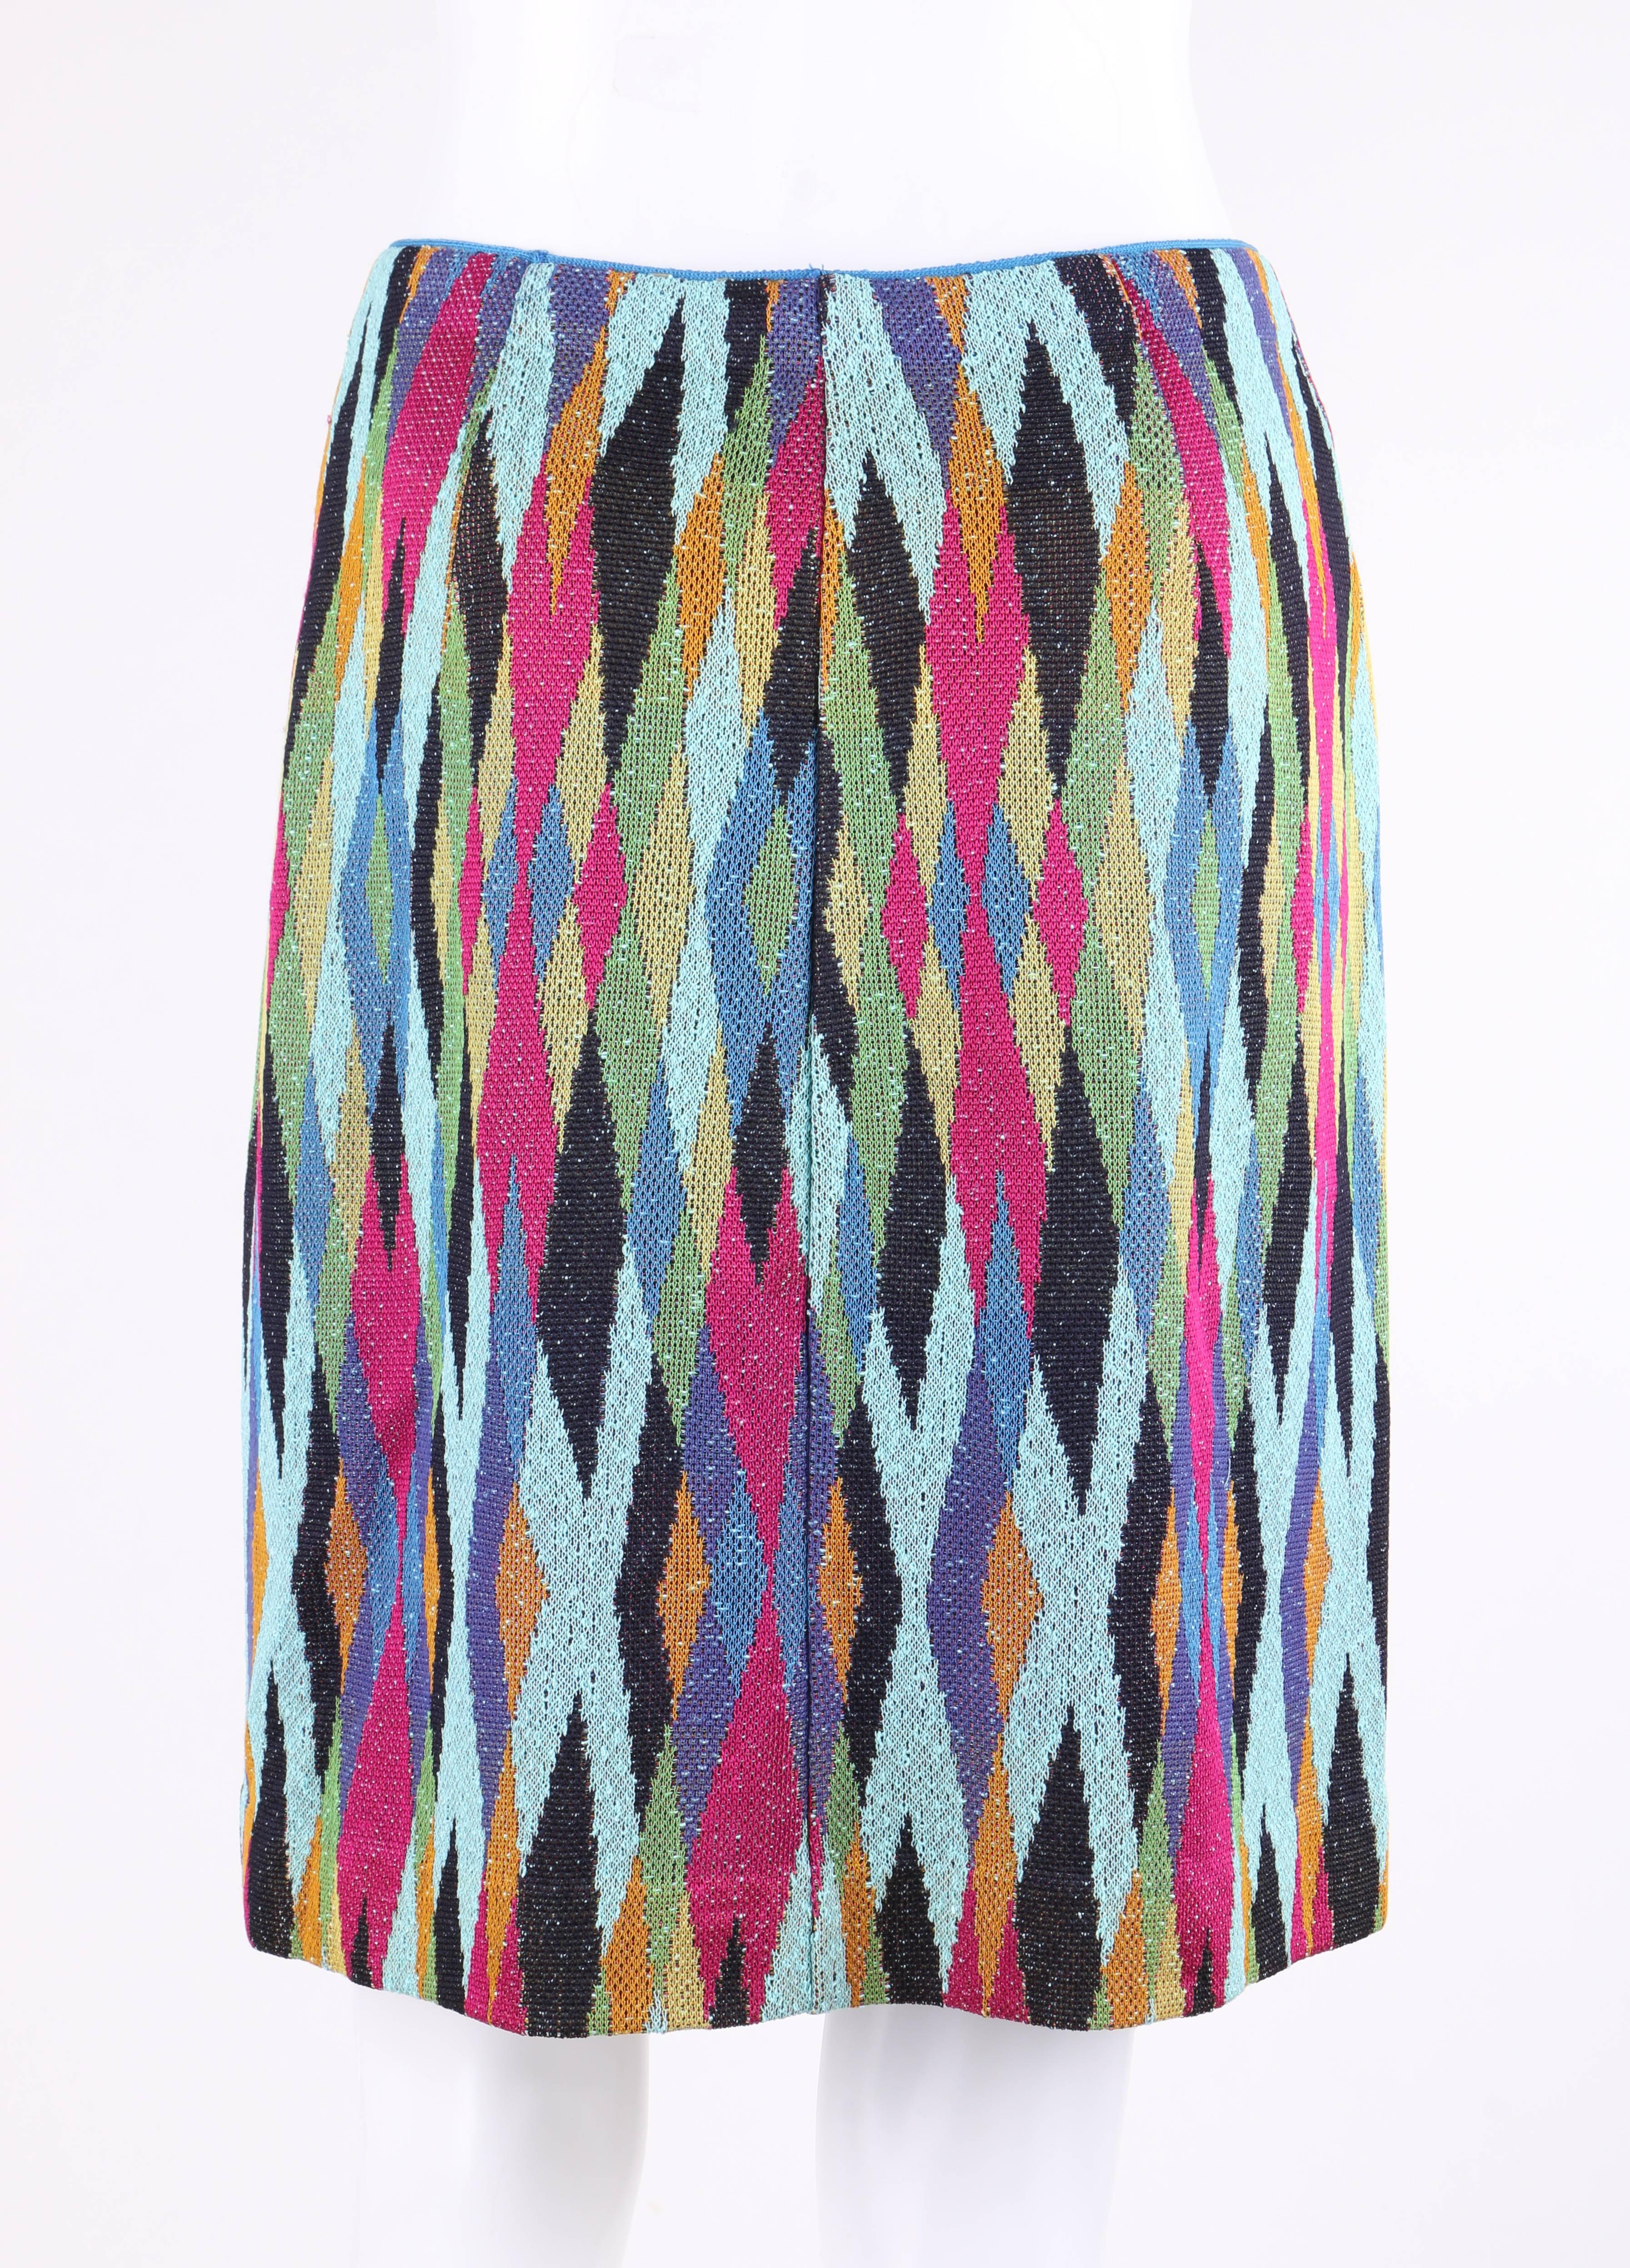 MISSONI c.1990's 2 Pc Multicolor Diamond Knit V Neck Top Skirt Suit Dress Set 3